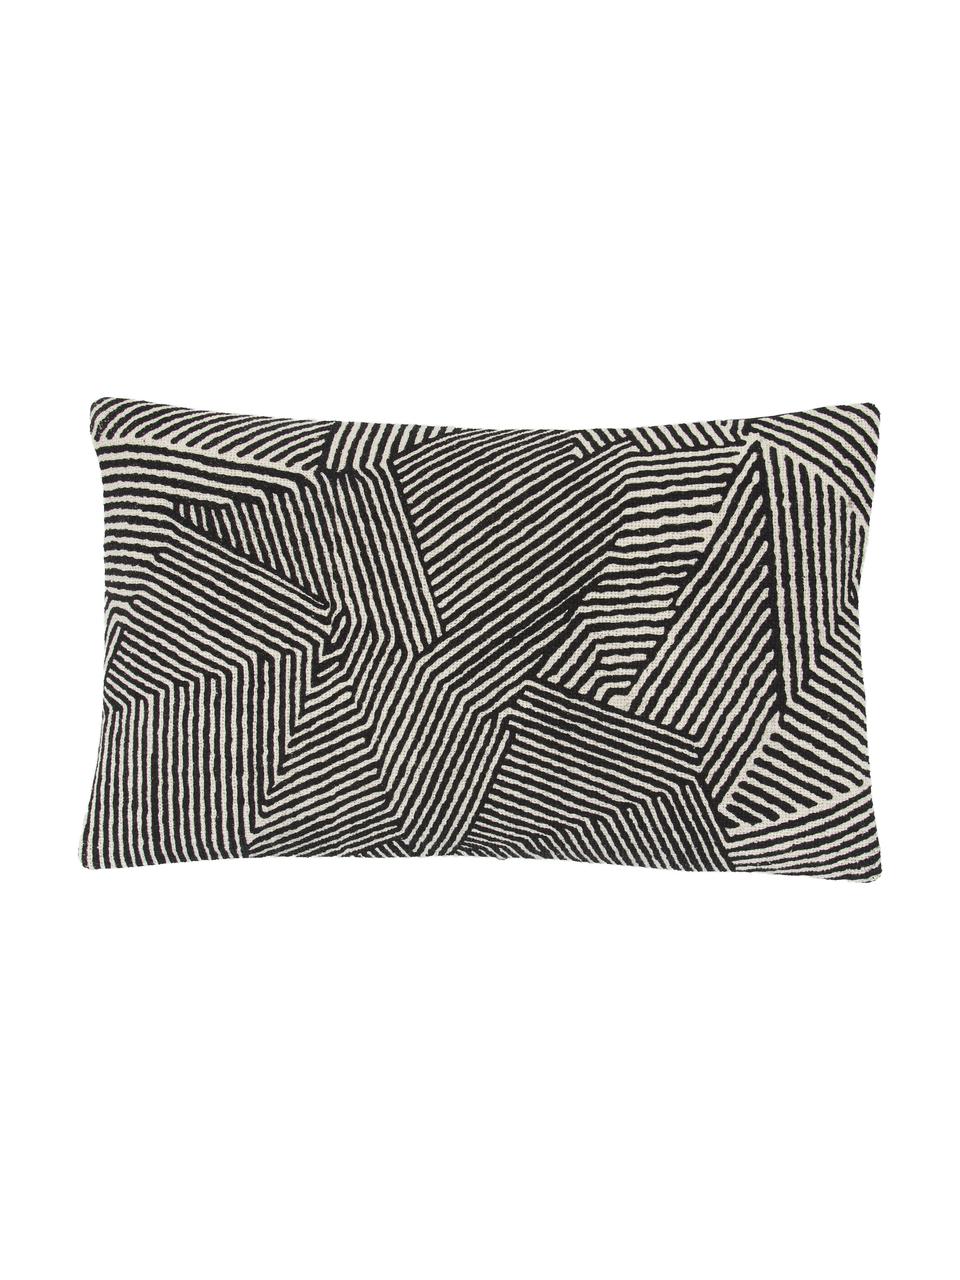 Poszewka na poduszkę Nadia, 100% bawełna, Beżowy, biały, czarny, S 30 x D 50 cm